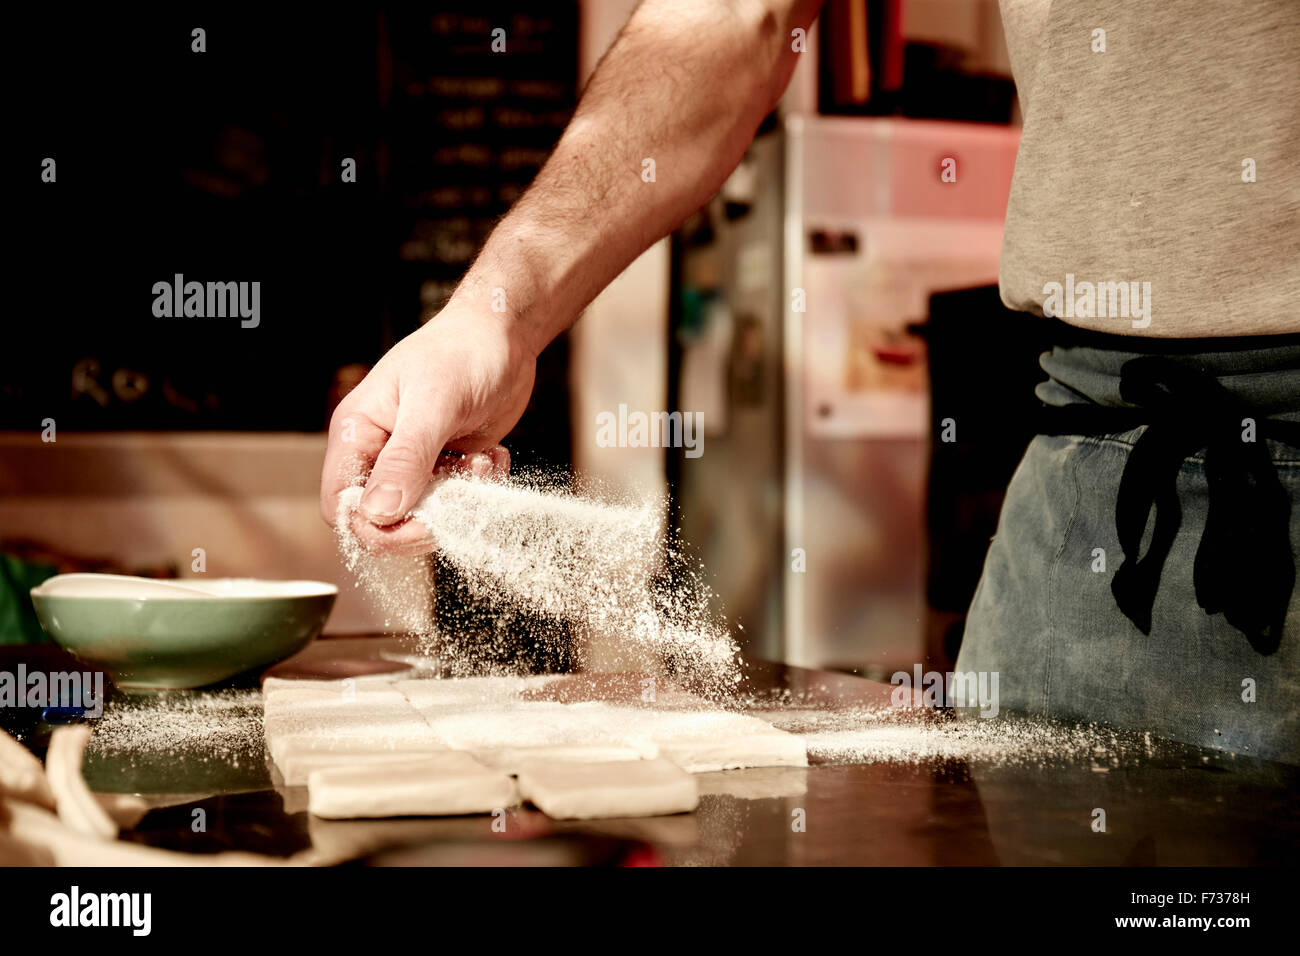 Un panadero trabaja sobre una superficie enharinada, dividiendo la masa preparada en forma de cuadrados. Foto de stock